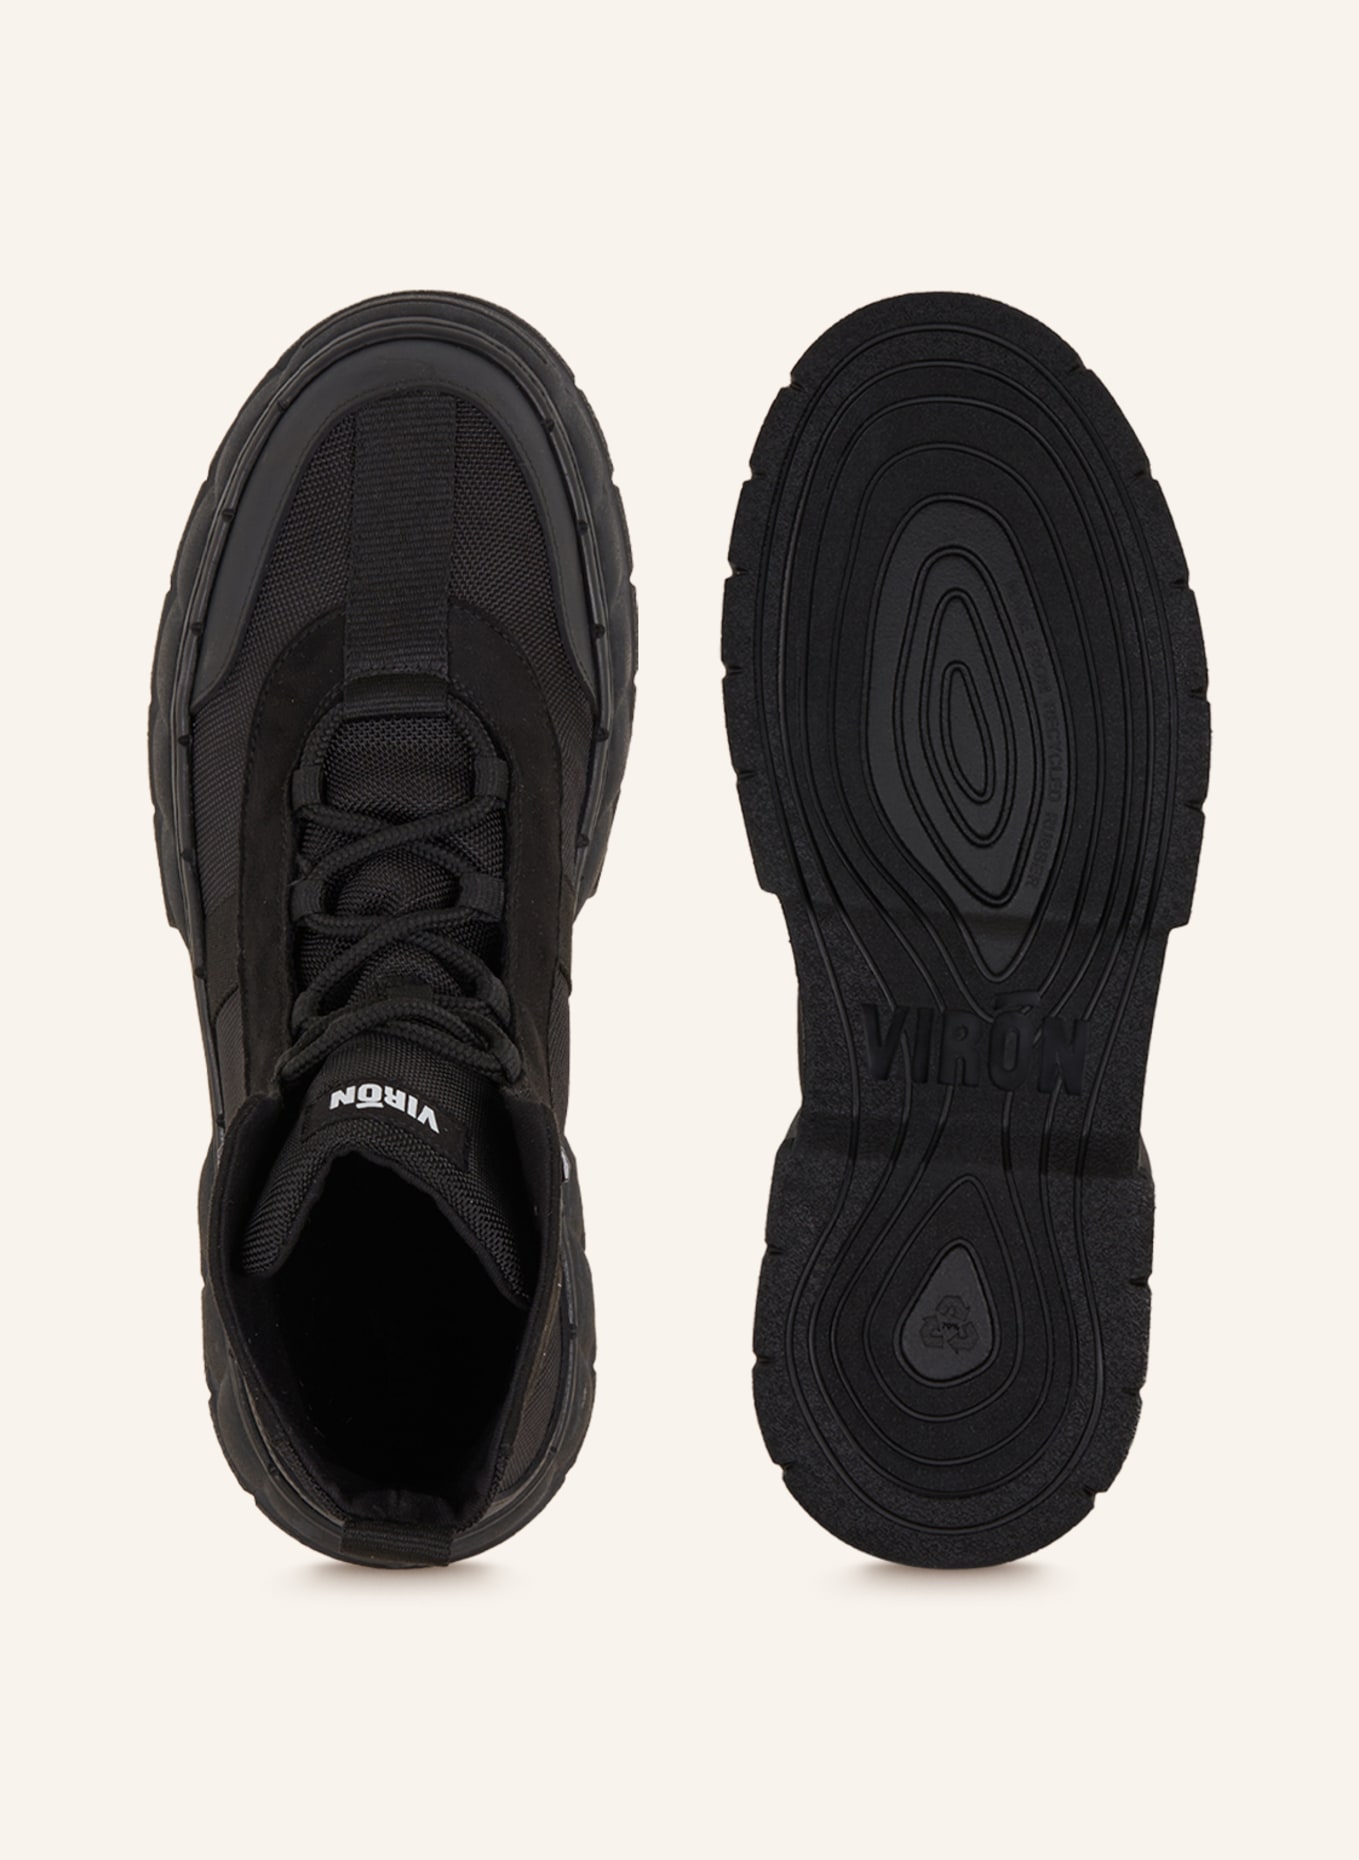 VIRÒN Lace-up boots 2017, Color: BLACK (Image 5)